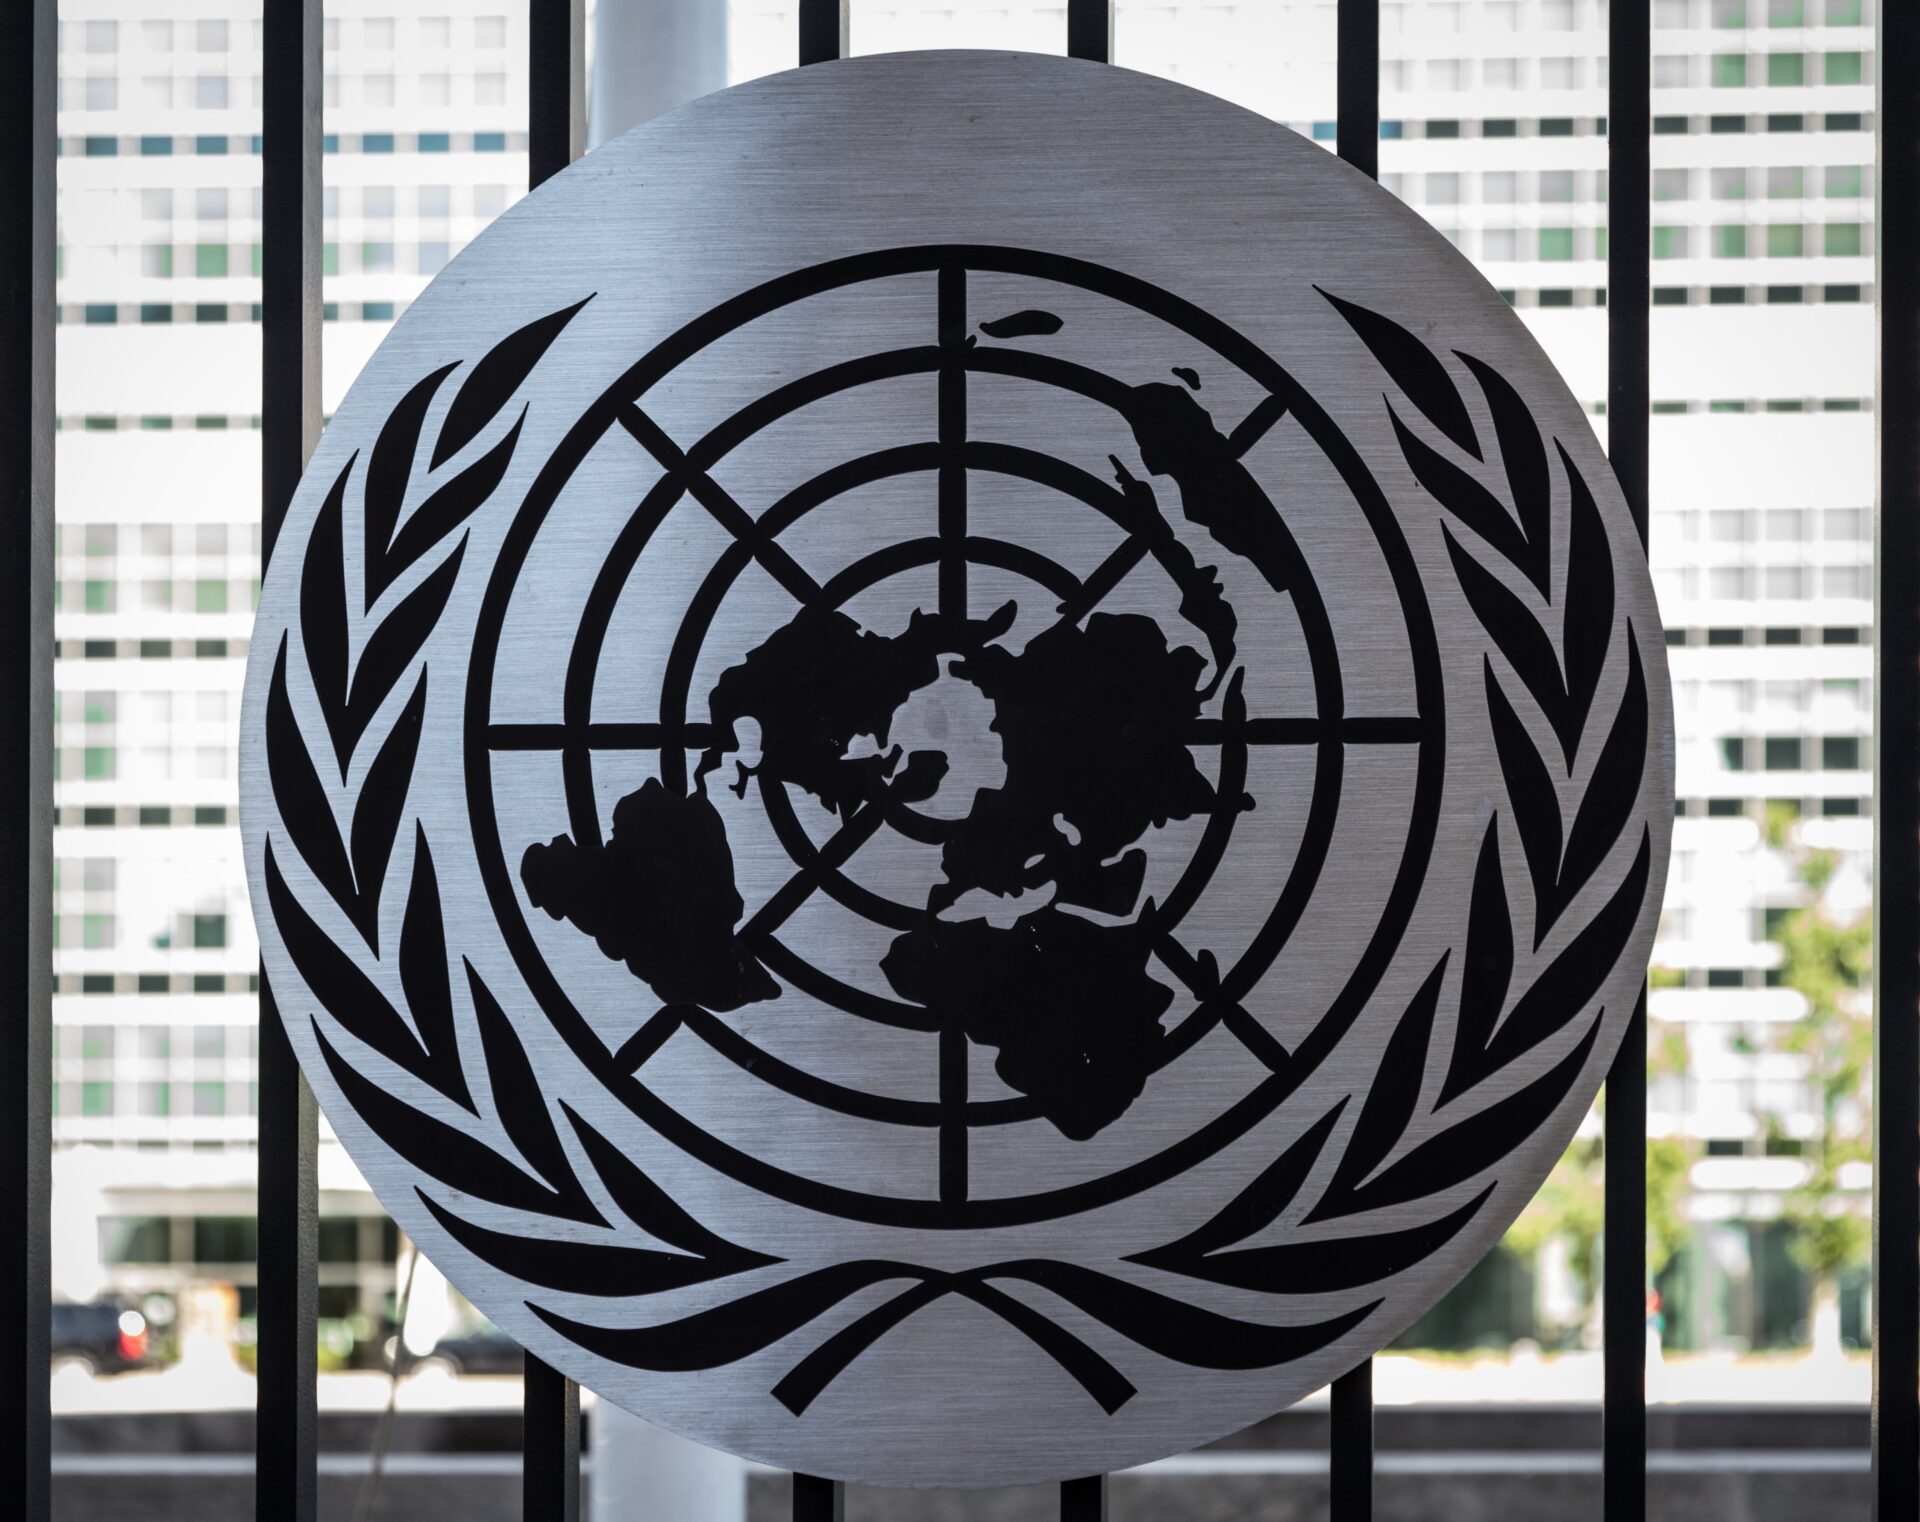 United Nations emblem